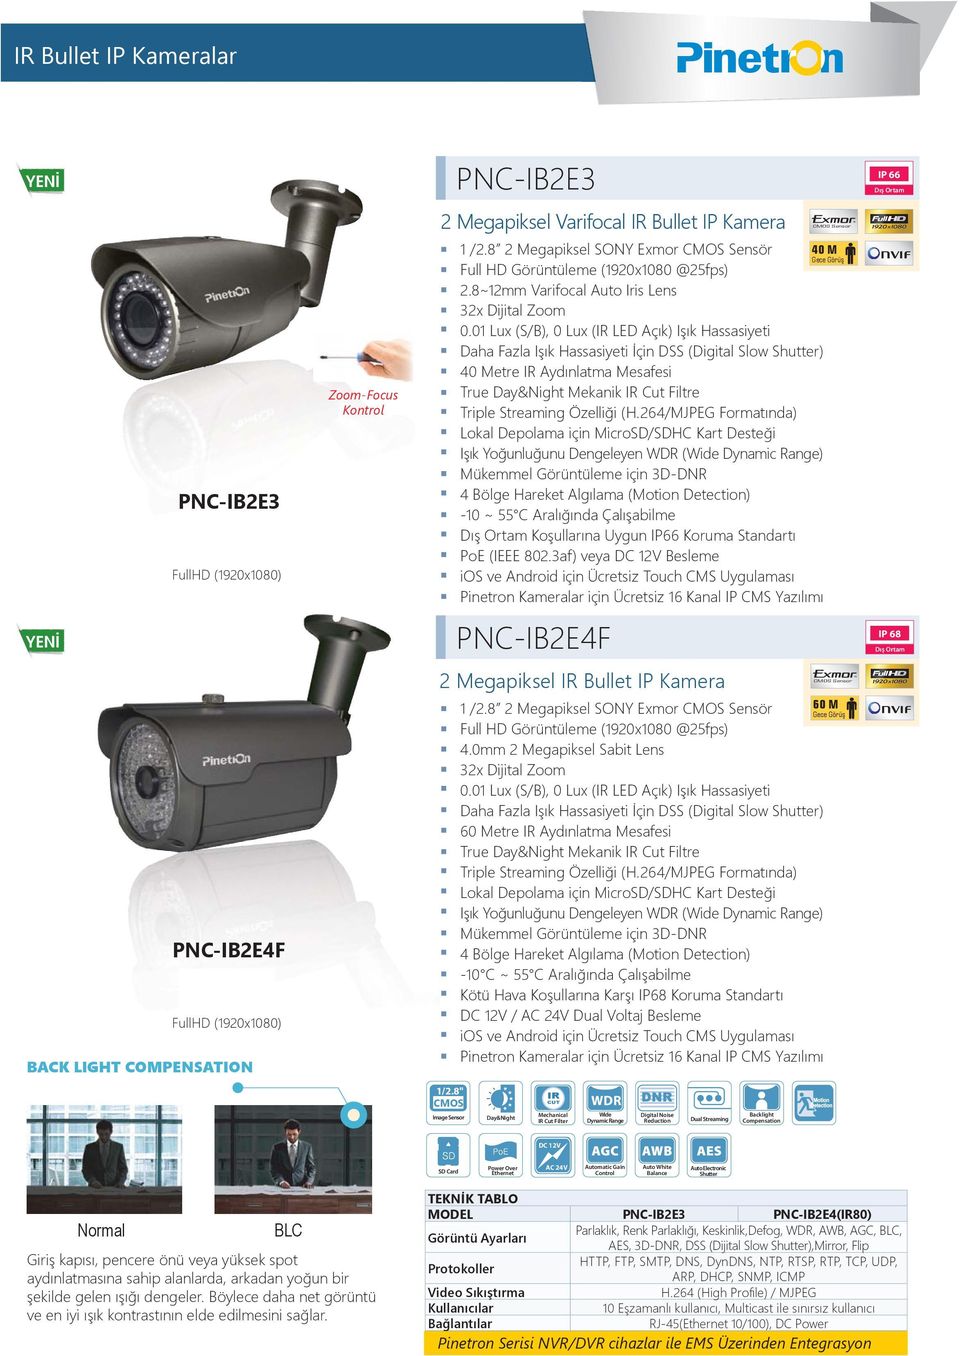 Standartı PNC-IB2E4F IP 68 2 Megapiksel Bullet IP Kamera PNC-IB2E4F 690 $ BACK LIGHT COMPENSATION 1 /2.8 2 Megapiksel SONY Exmor Sensör 60 M 4.0mm 2 Megapiksel Sabit Lens 0.